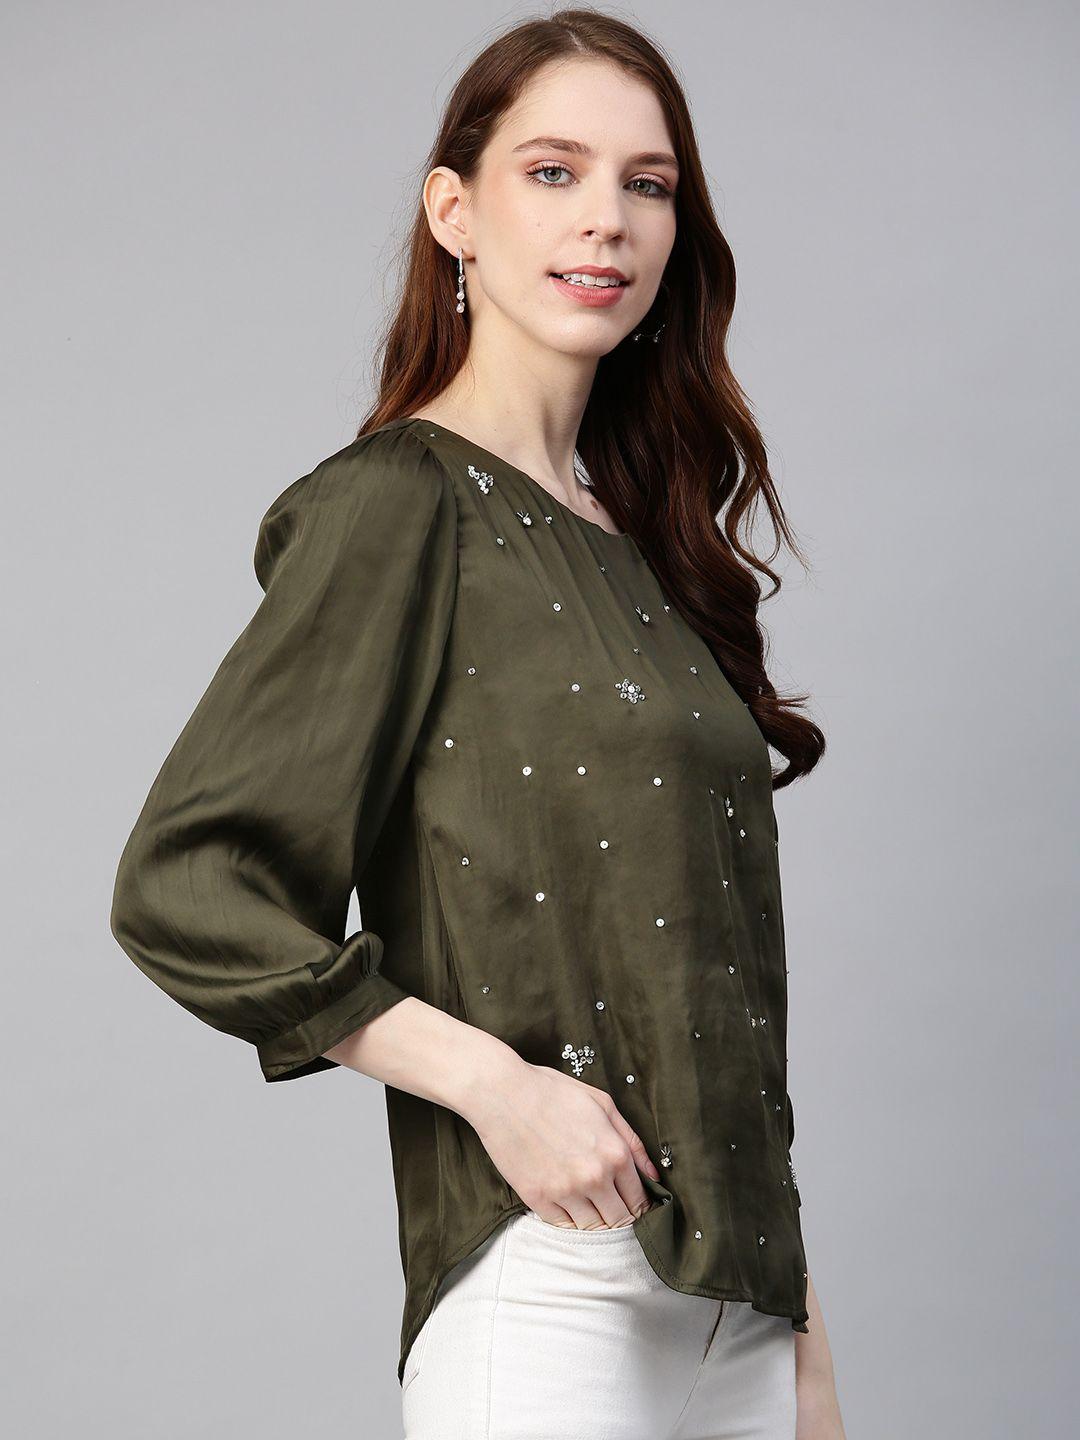 Olive Scattered sequin embellished blouse